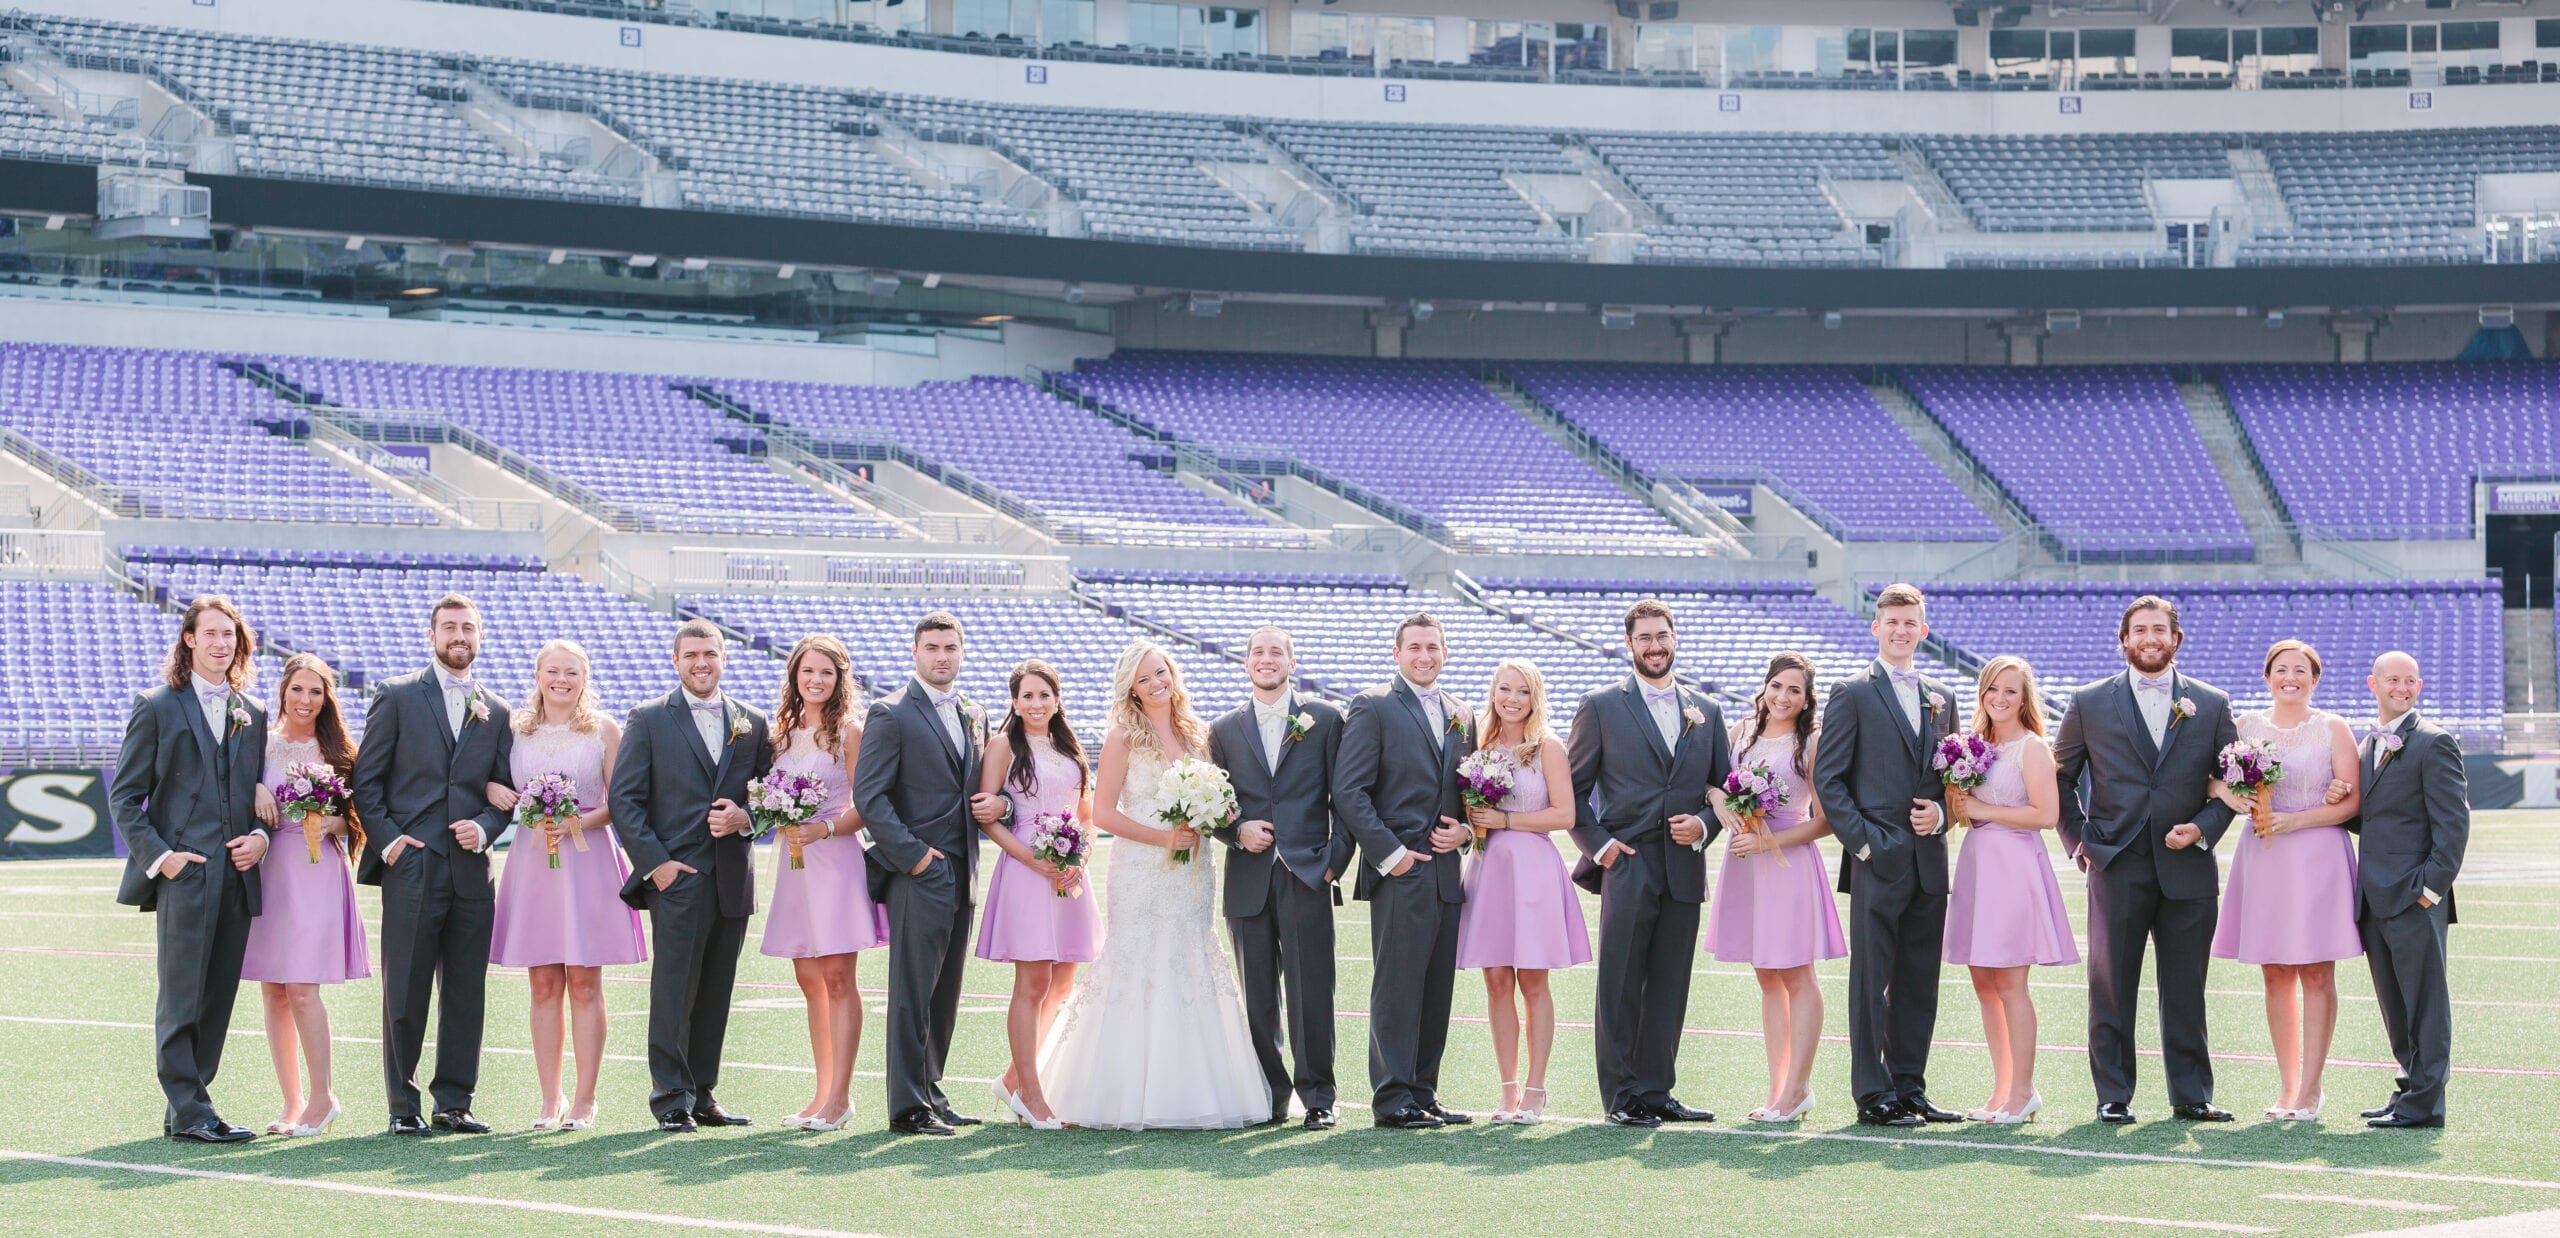 M&T Bank Stadium, Baltimore Ravens Wedding | Photography by Lauren Myers Photography #BaltimoreRavens #RavensWedding #PurpleGoldWedding